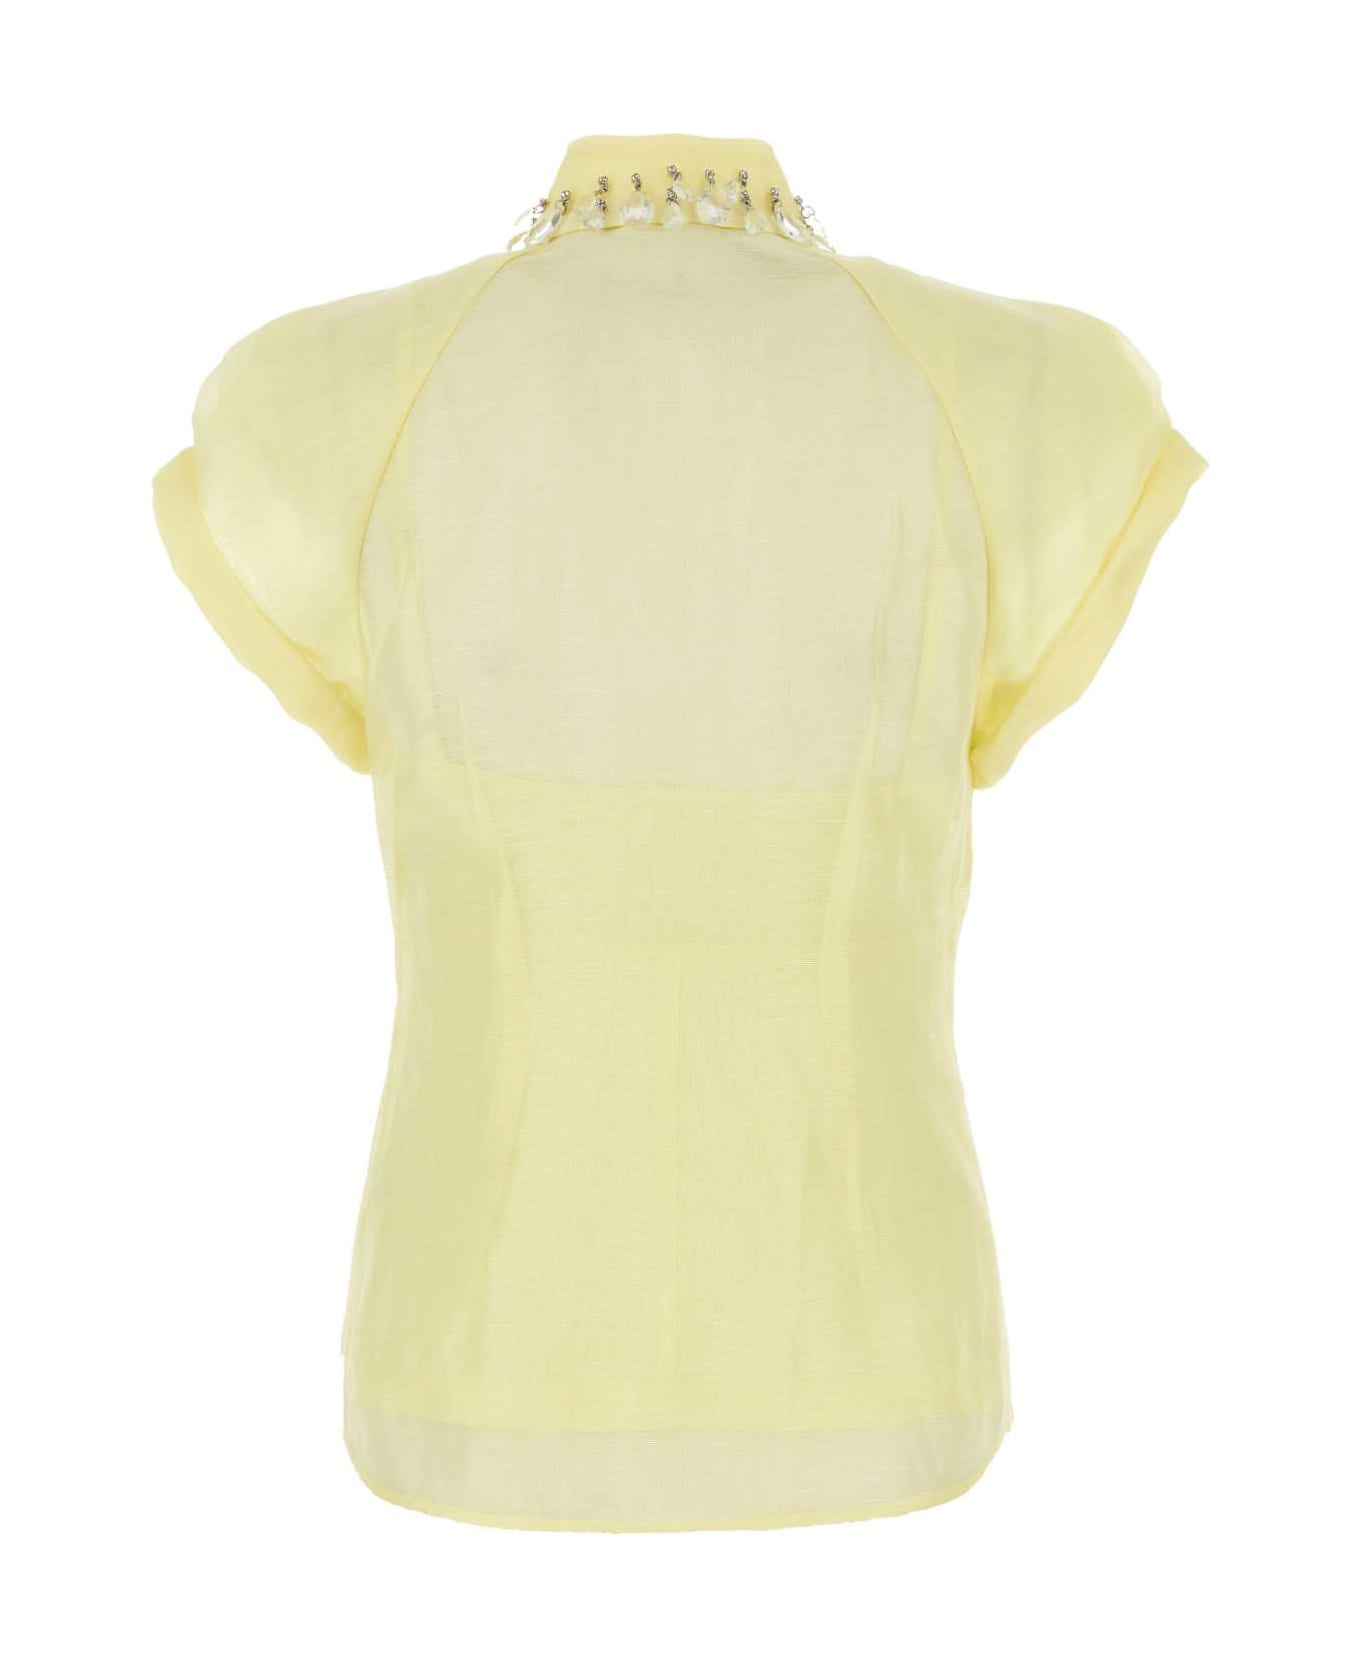 Zimmermann Pastel Yellow Linen Blend Matchmaker Shirt - Lemon